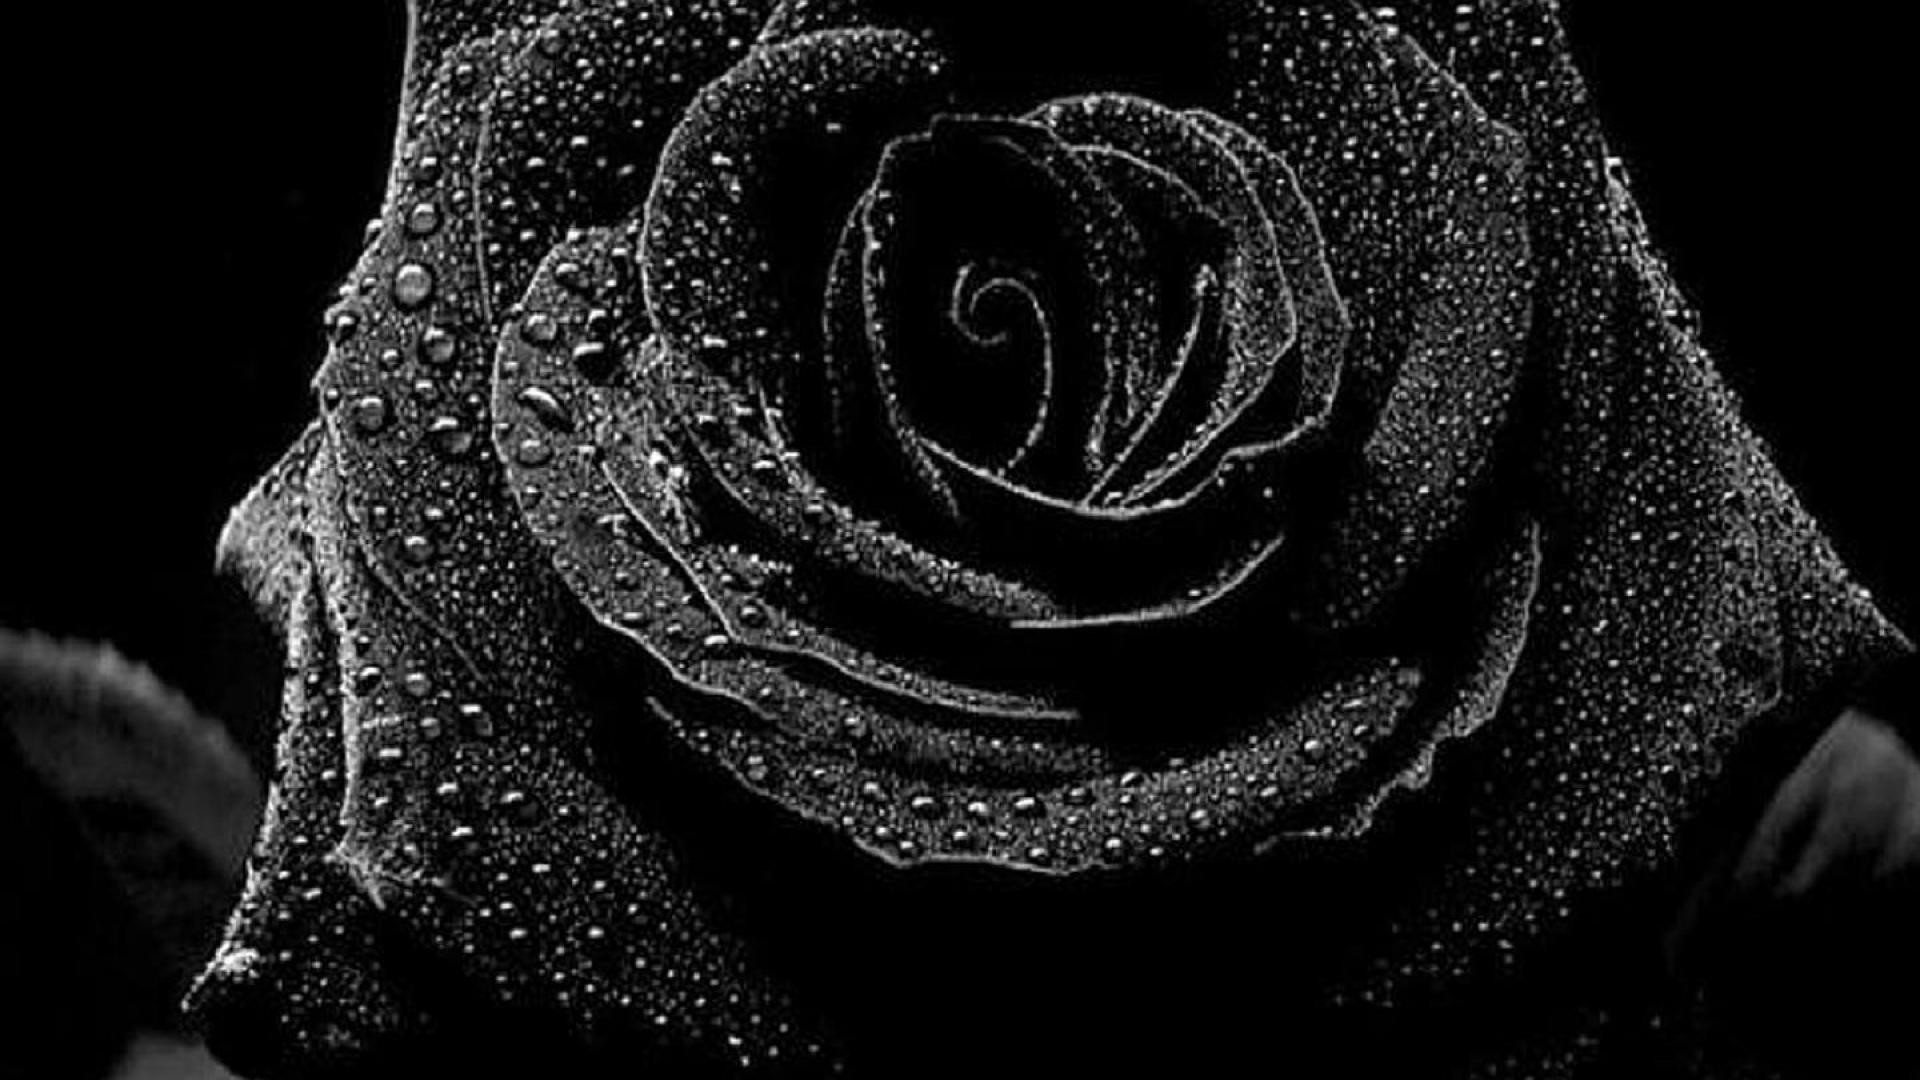 schwarz weiß rosentapete,schwarz,monochrome fotografie,schwarz und weiß,wasser,rose